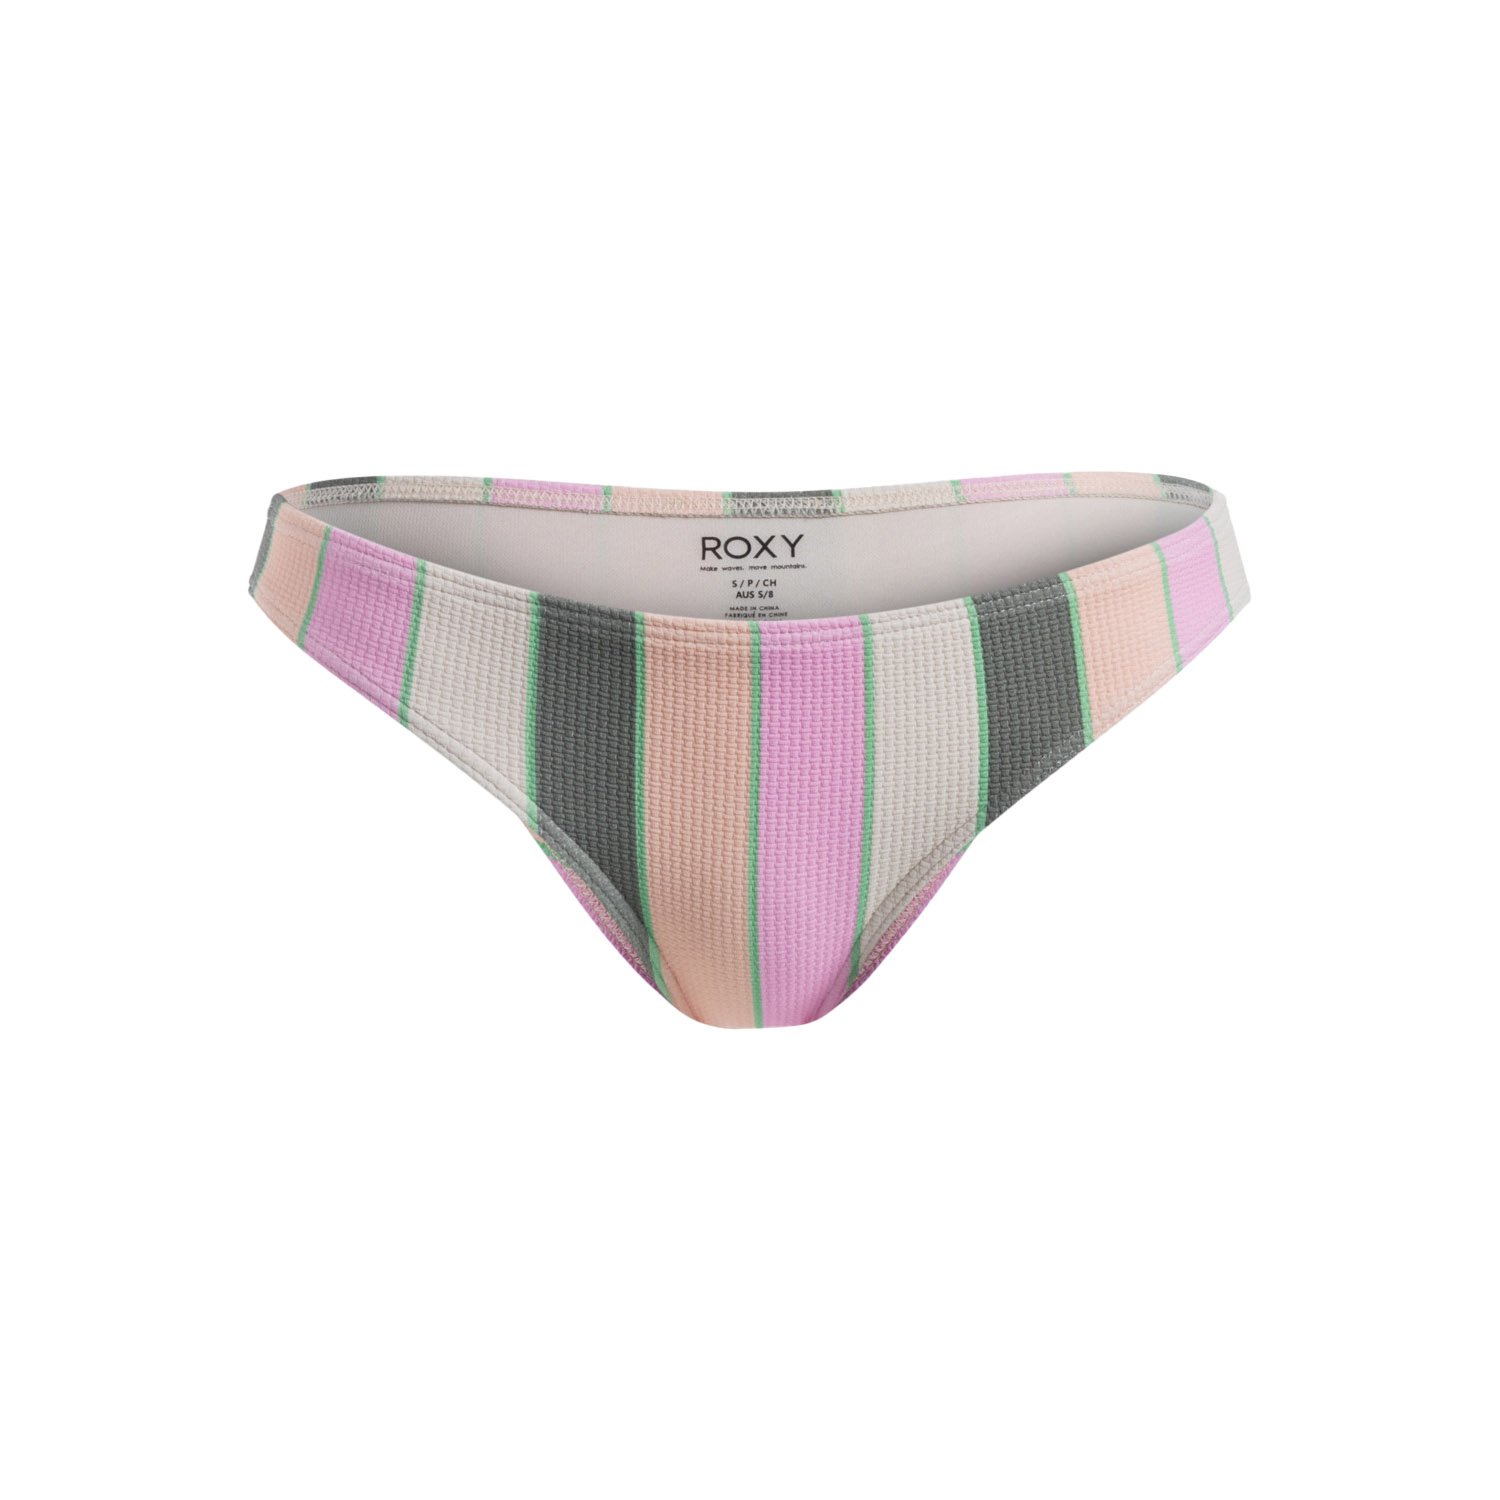 Roxy Vista Stripe Kadın Bikini Altı - Renkli - 1